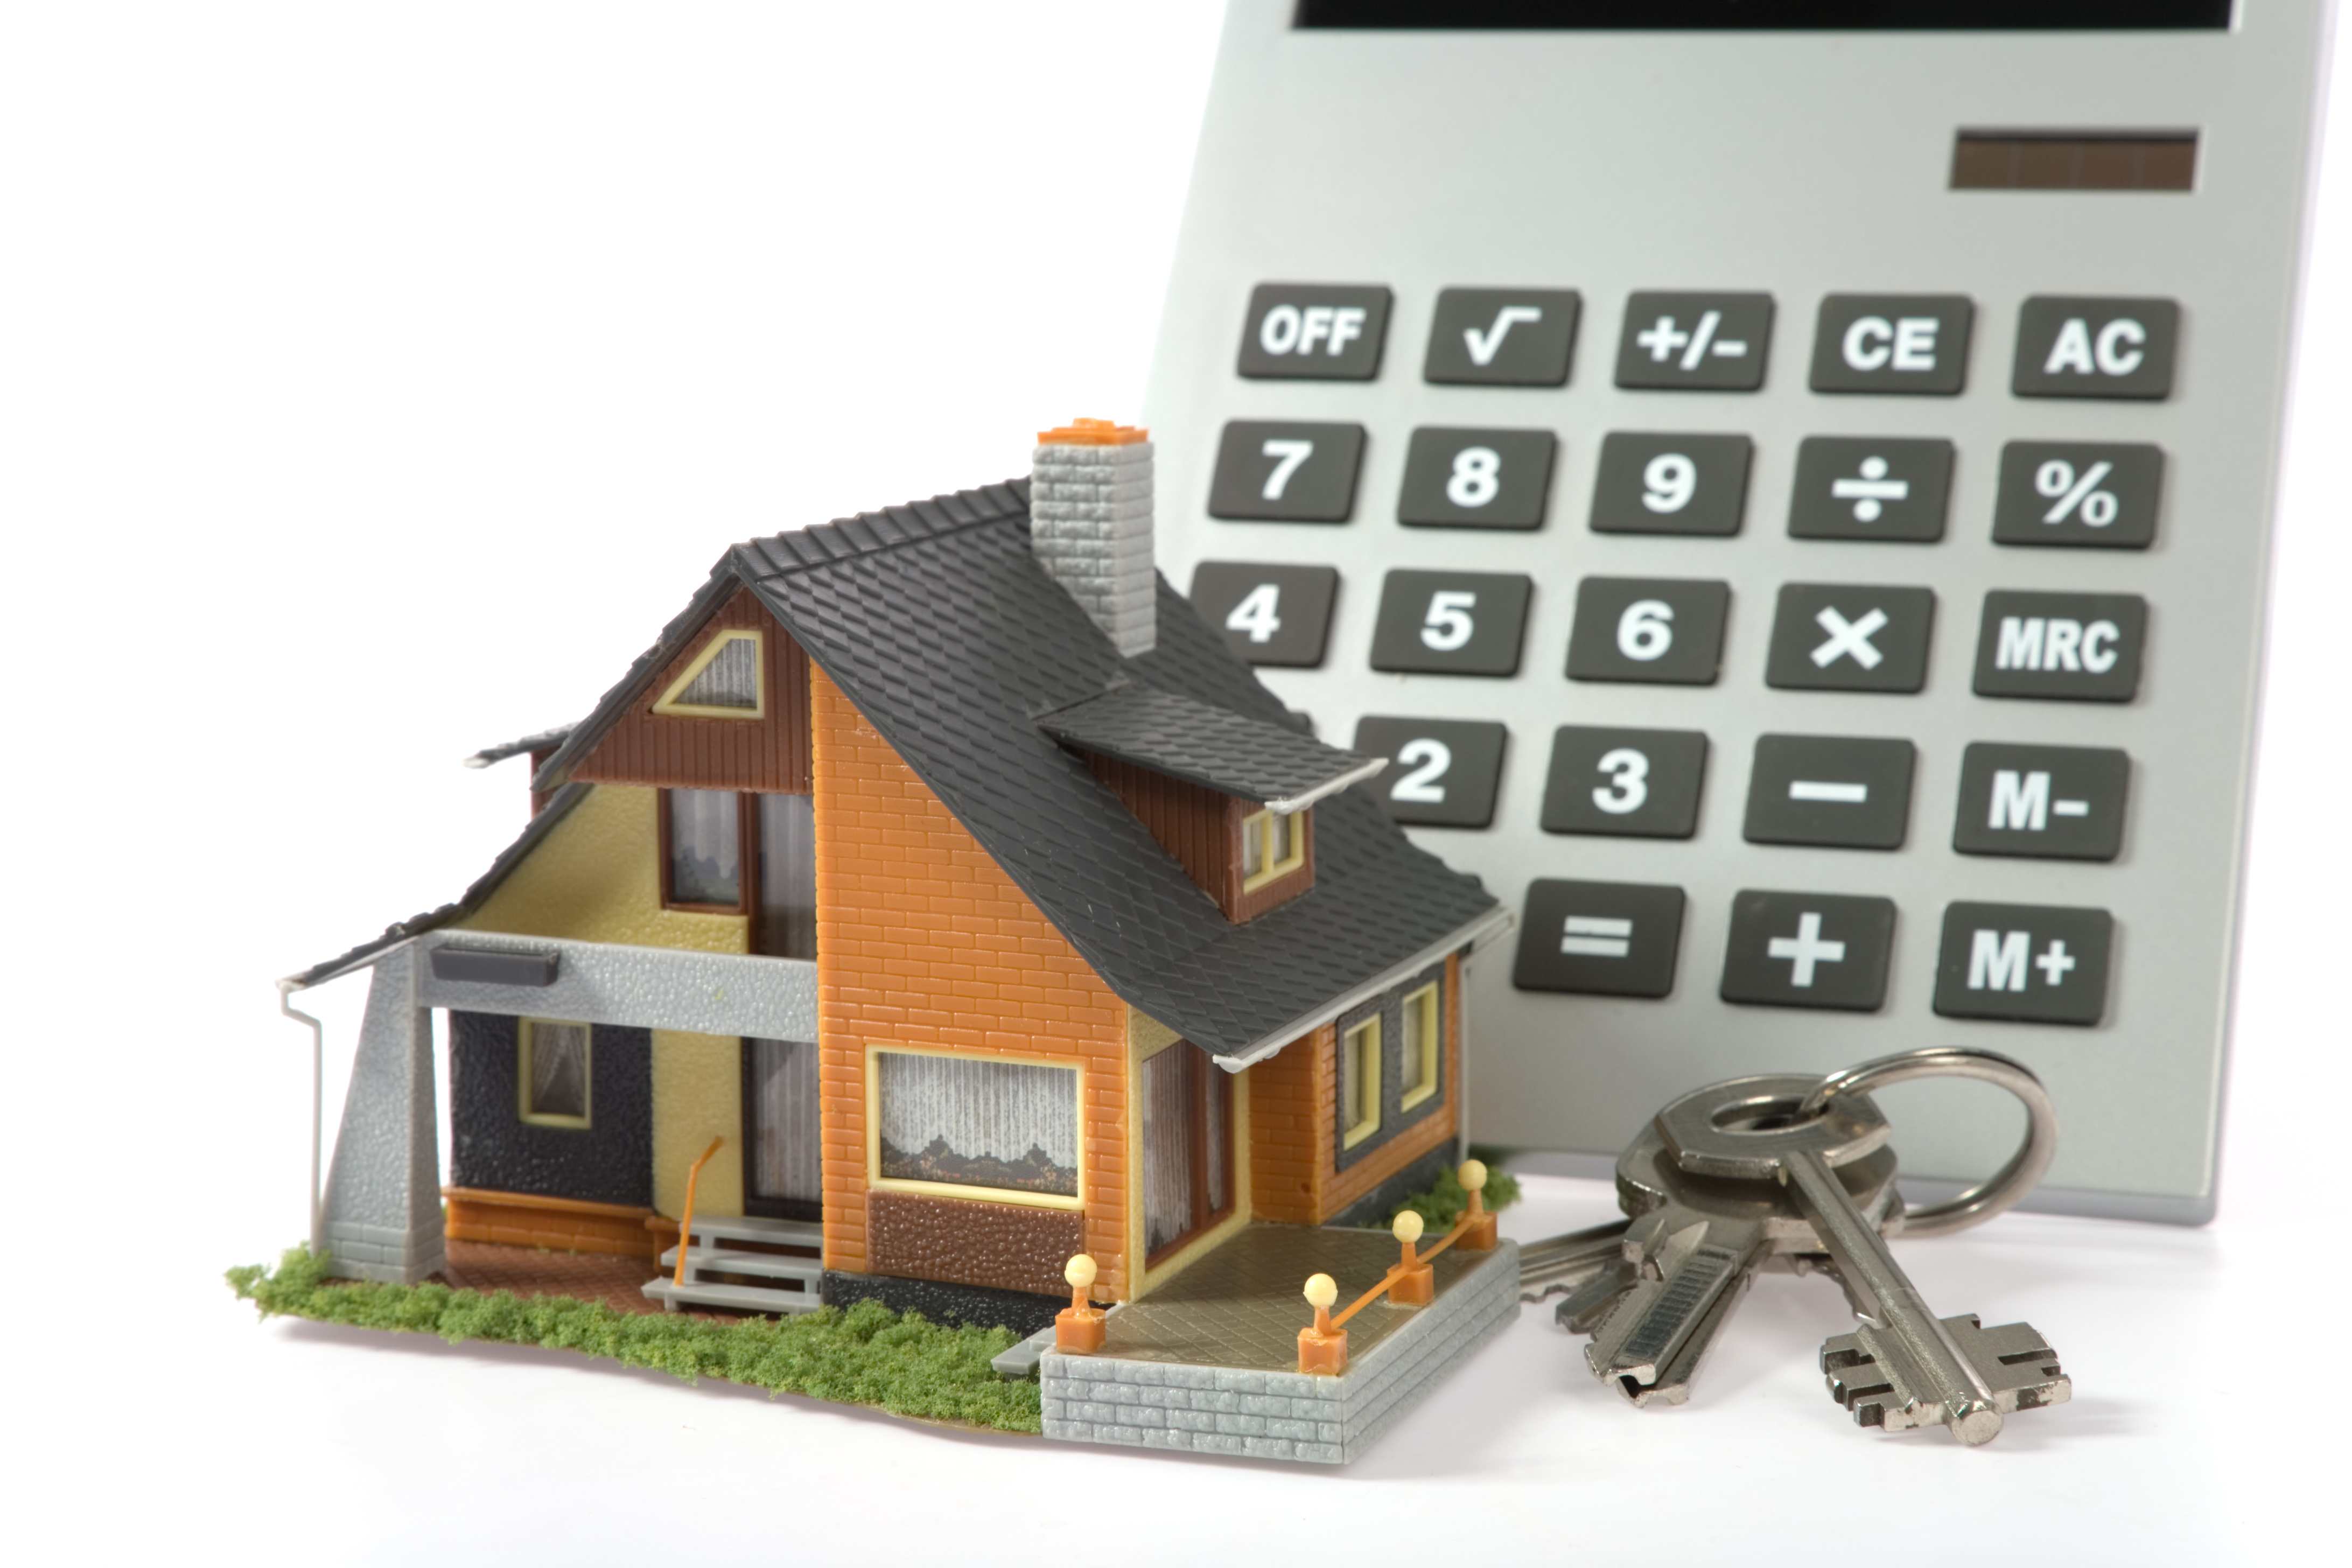 Движимое имущество здания. Оценка недвижимости. Оценка недвижимости для ипотеки. Оценщик имущества. Оценка имущества движимого и недвижимого имущества.